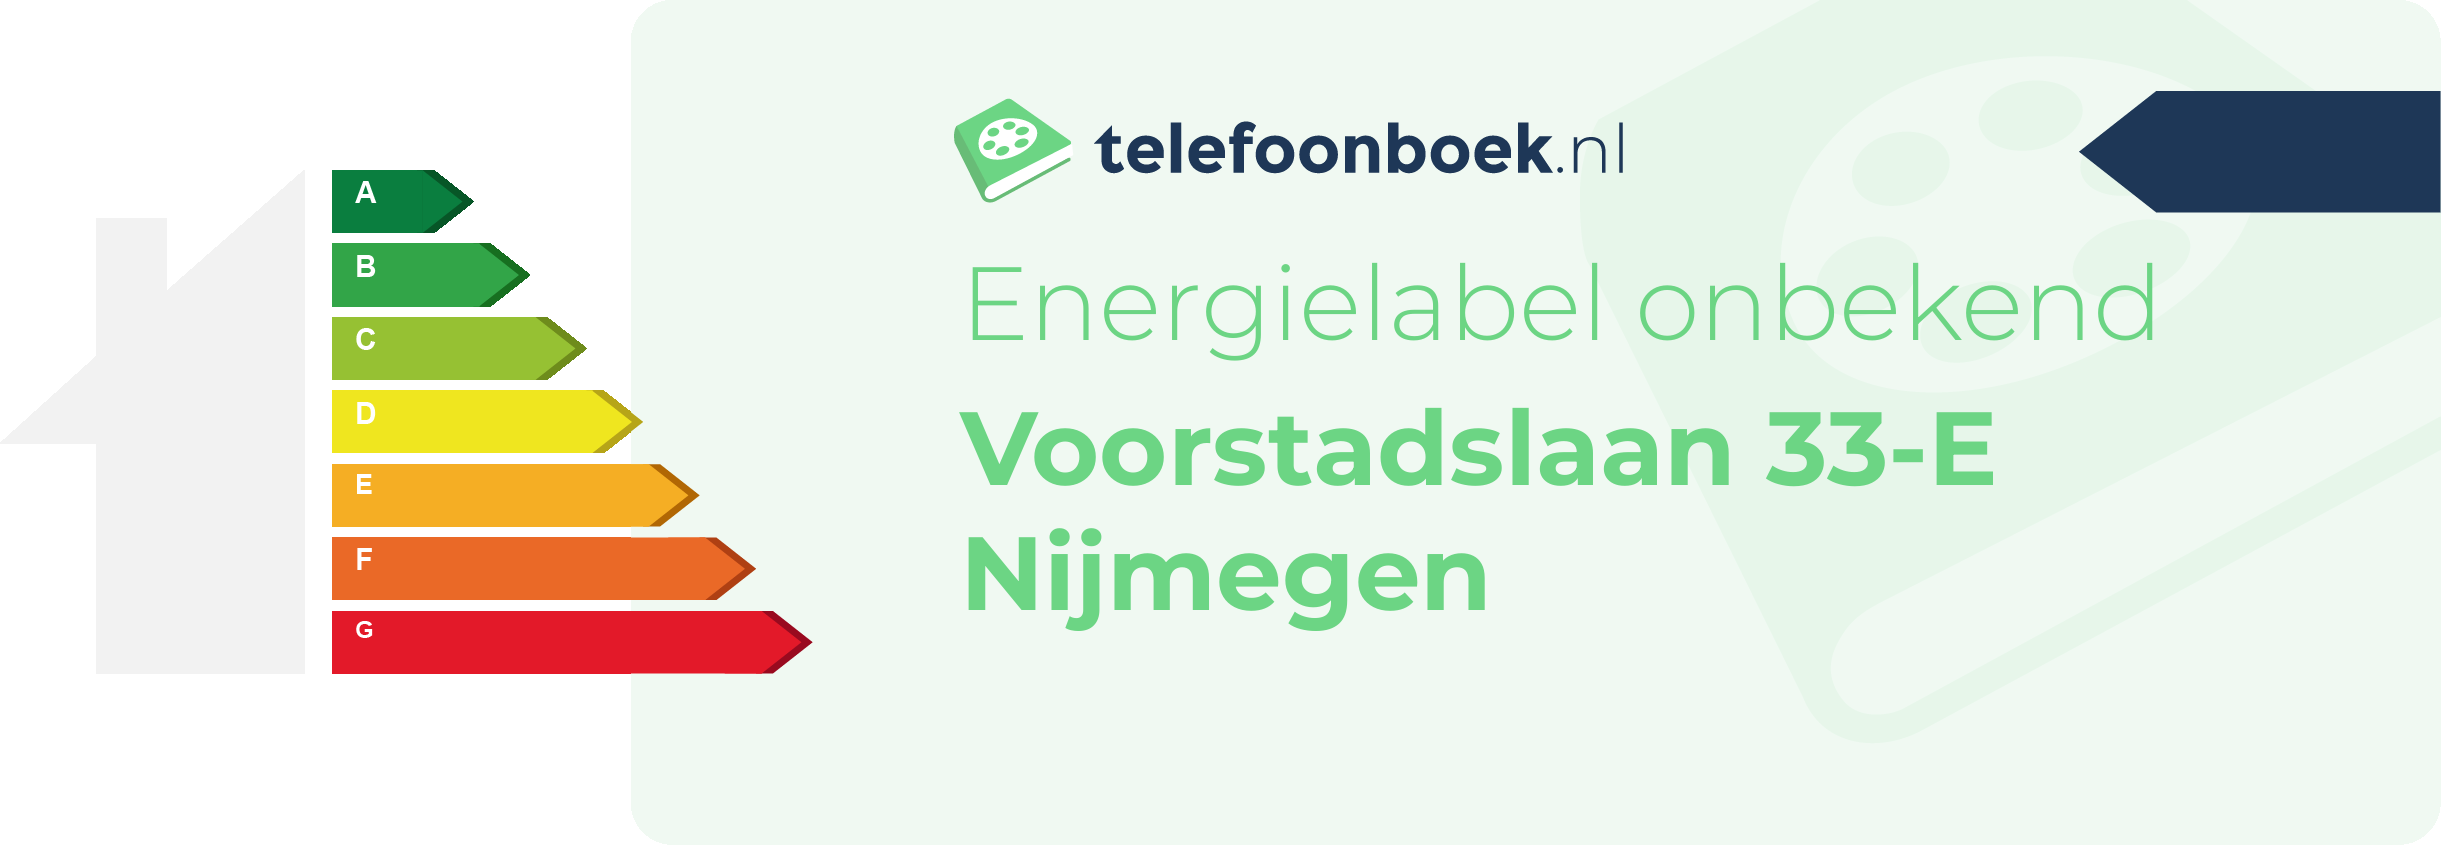 Energielabel Voorstadslaan 33-E Nijmegen